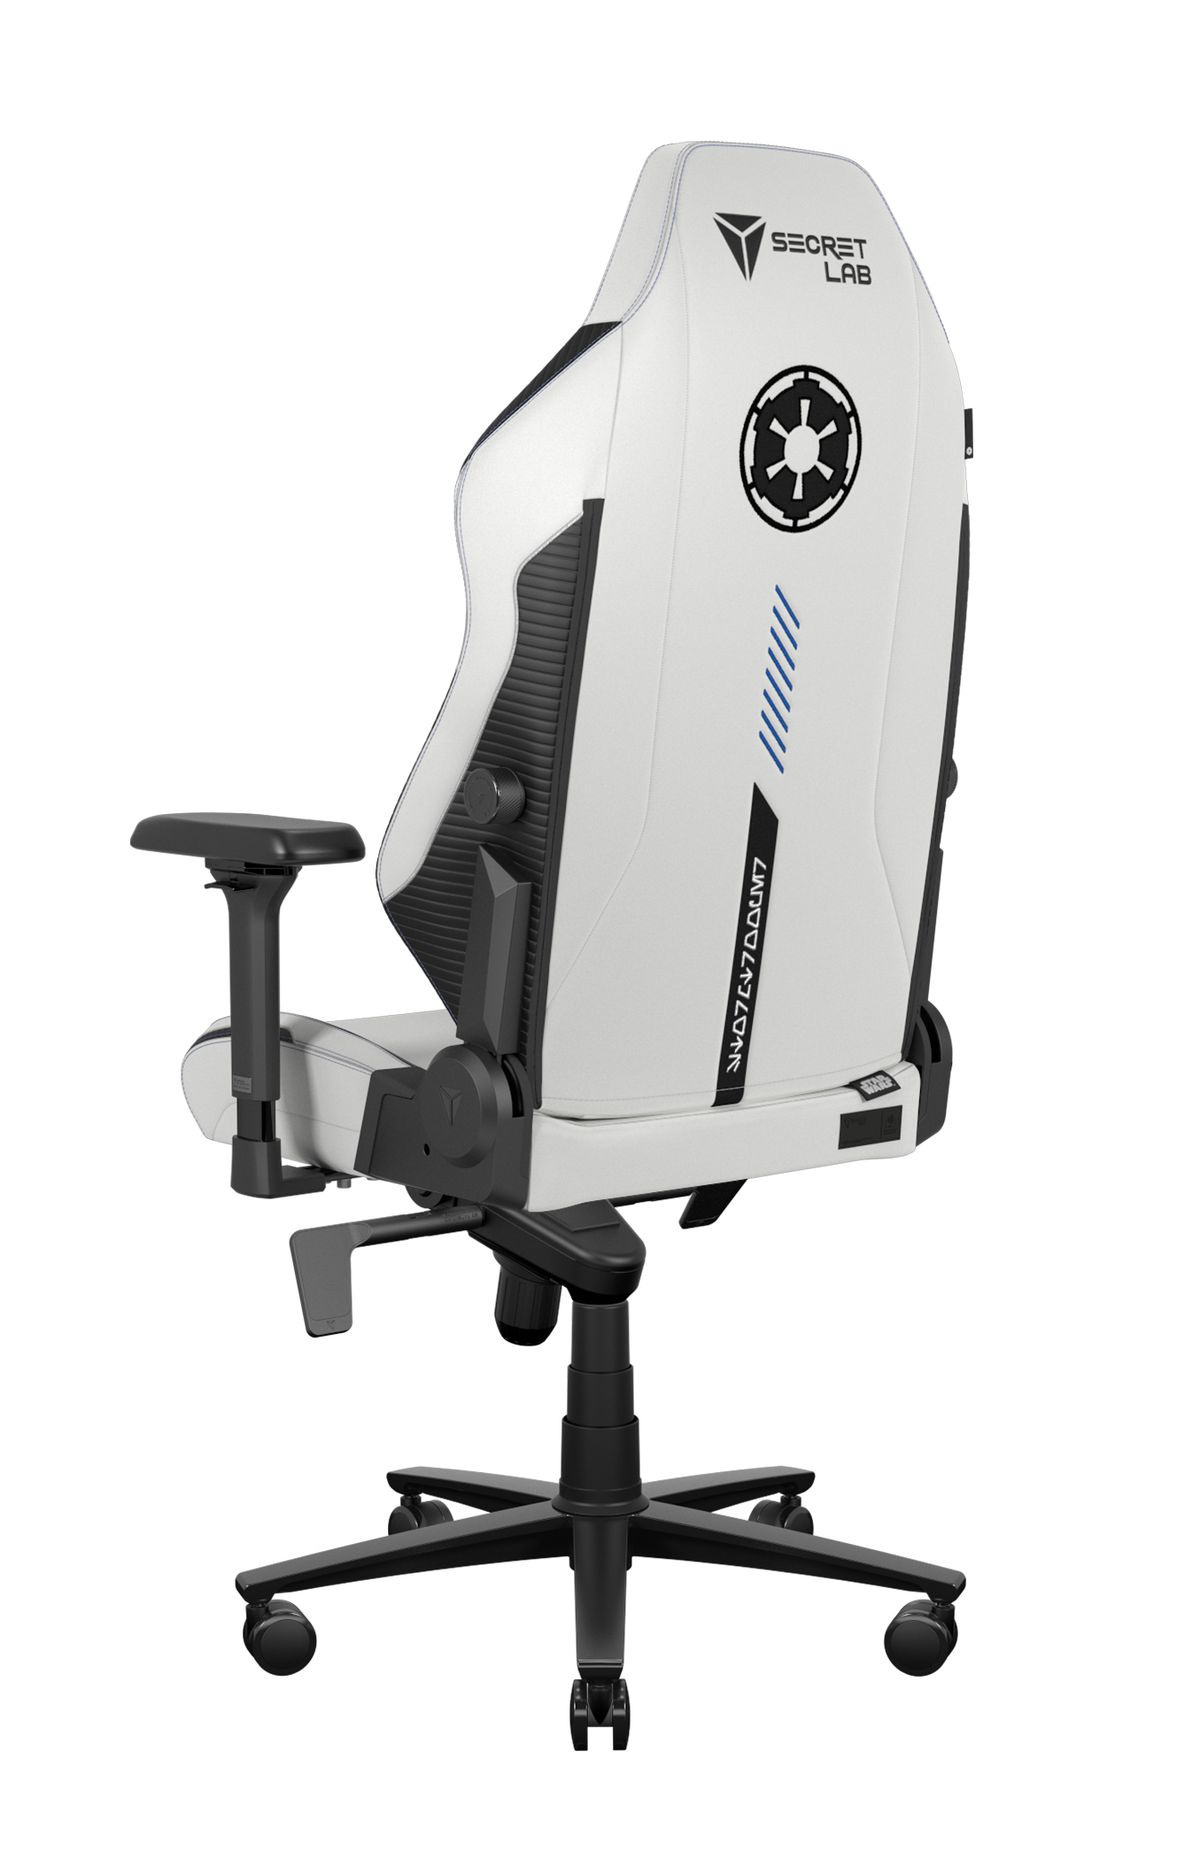 Immagine di una sedia da gioco Star Wars bianca e nera.